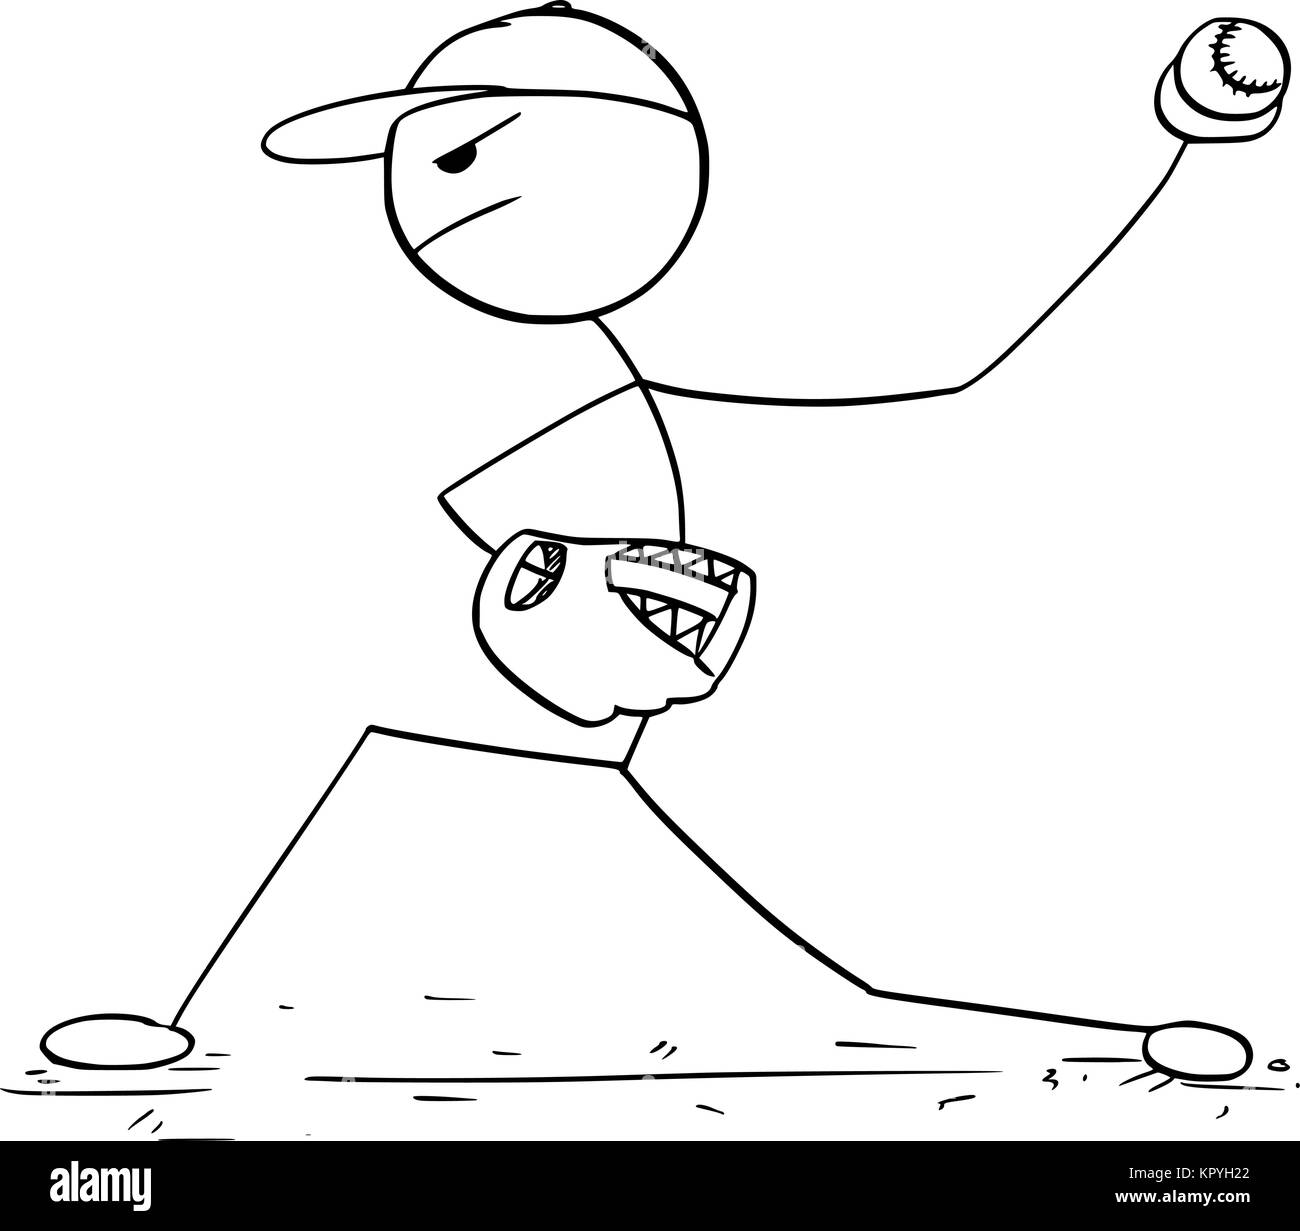 Cartoon stick man dessin illustration de l'homme joueur de baseball pitcher. Illustration de Vecteur